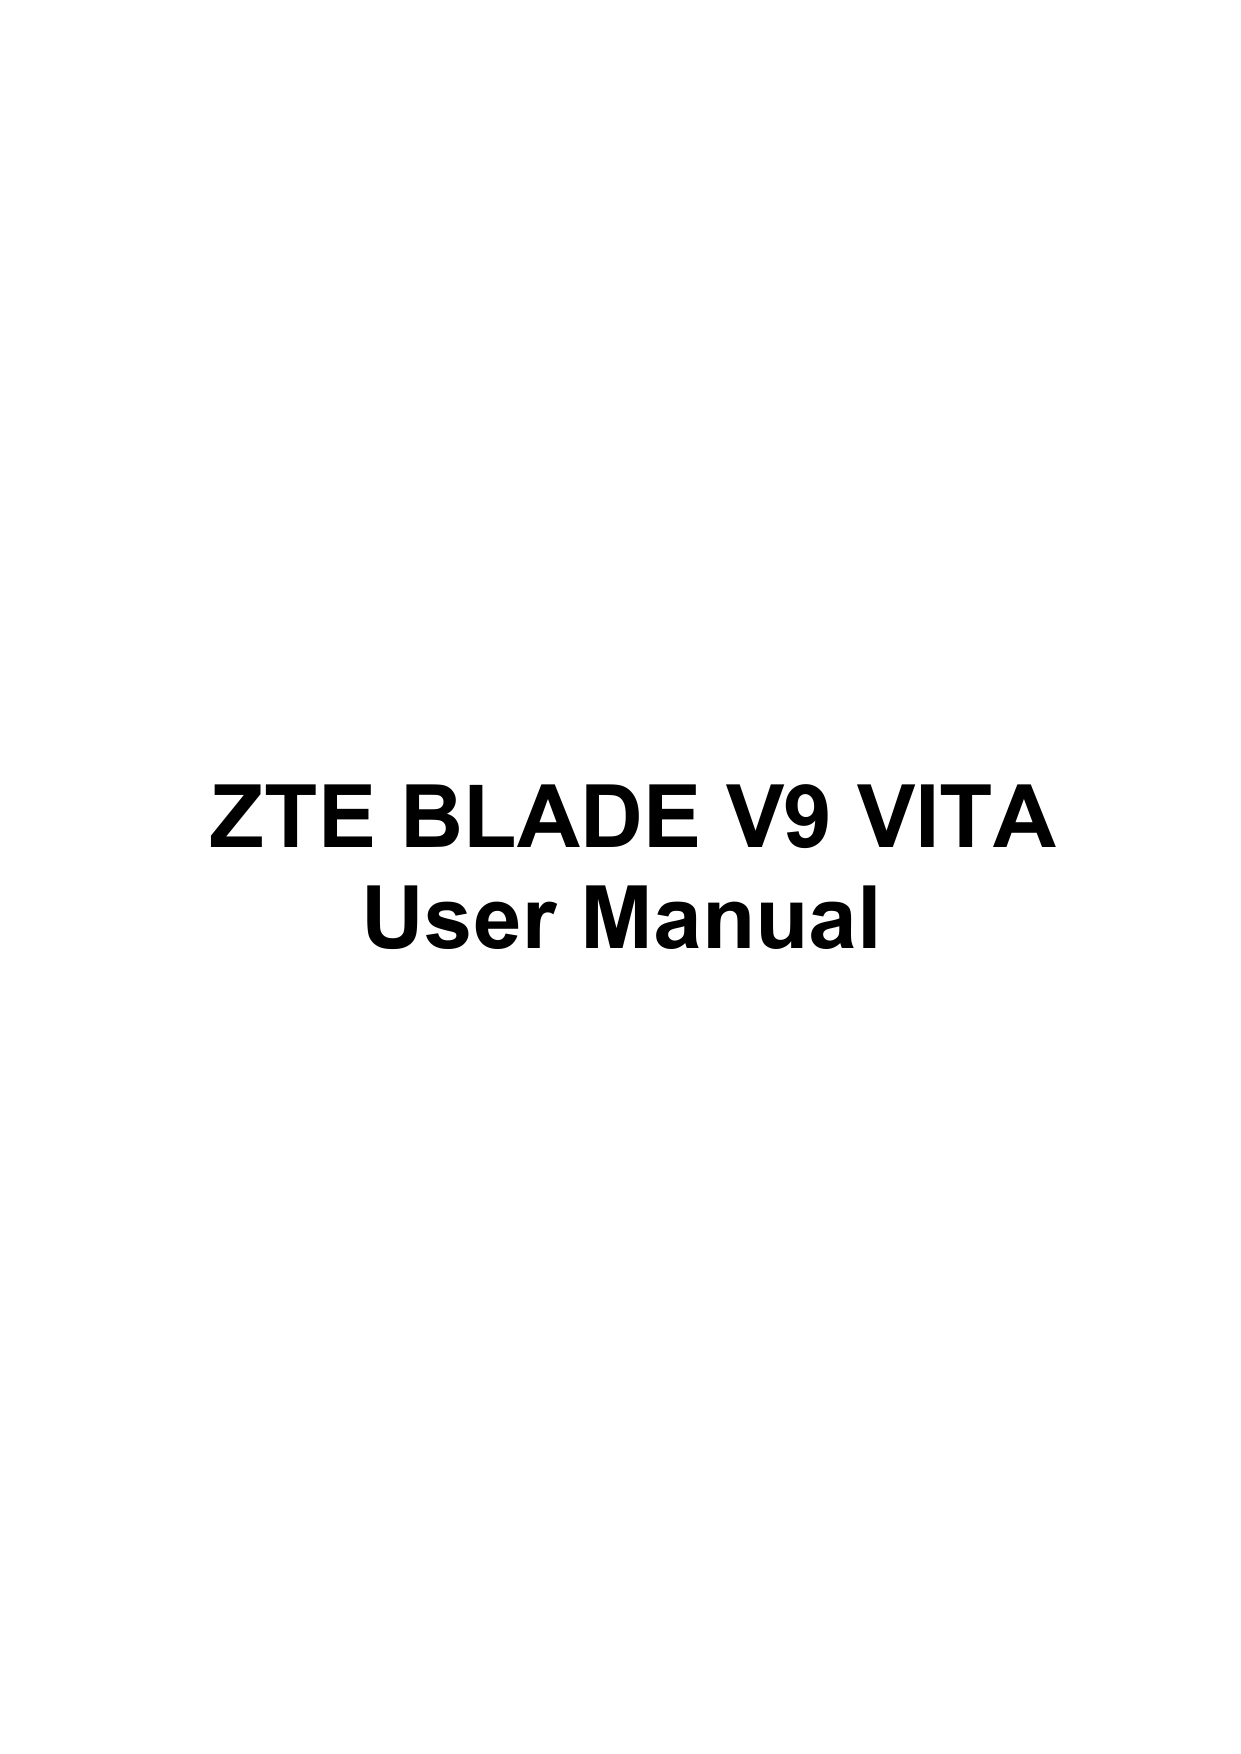      ZTE BLADE V9 VITA User Manual 